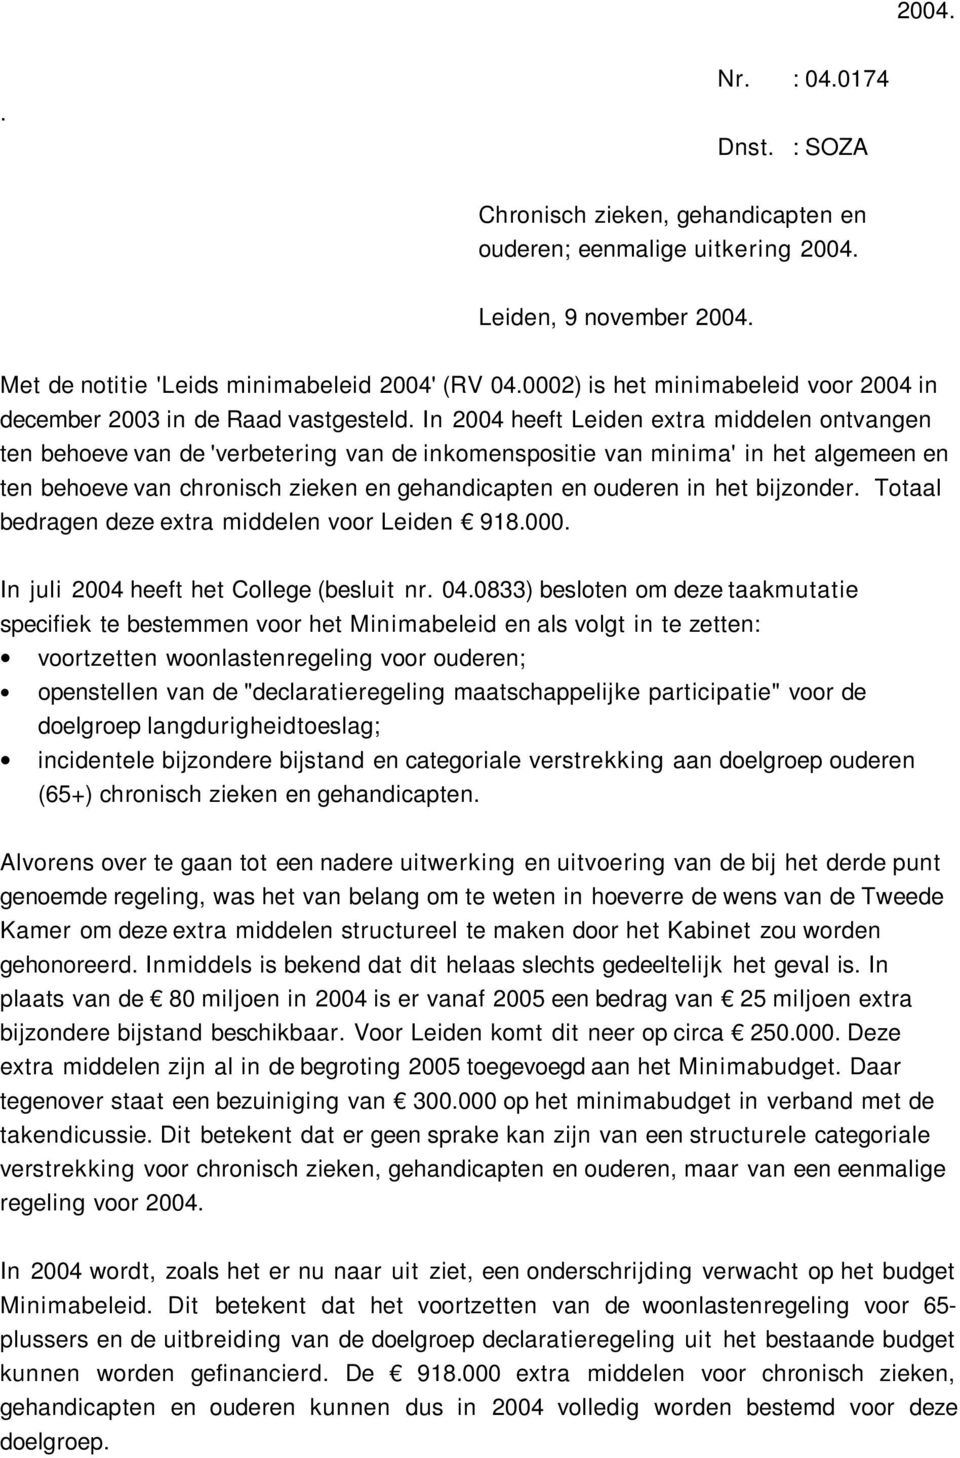 In 2004 heeft Leiden extra middelen ontvangen ten behoeve van de 'verbetering van de inkomenspositie van minima' in het algemeen en ten behoeve van chronisch zieken en gehandicapten en ouderen in het